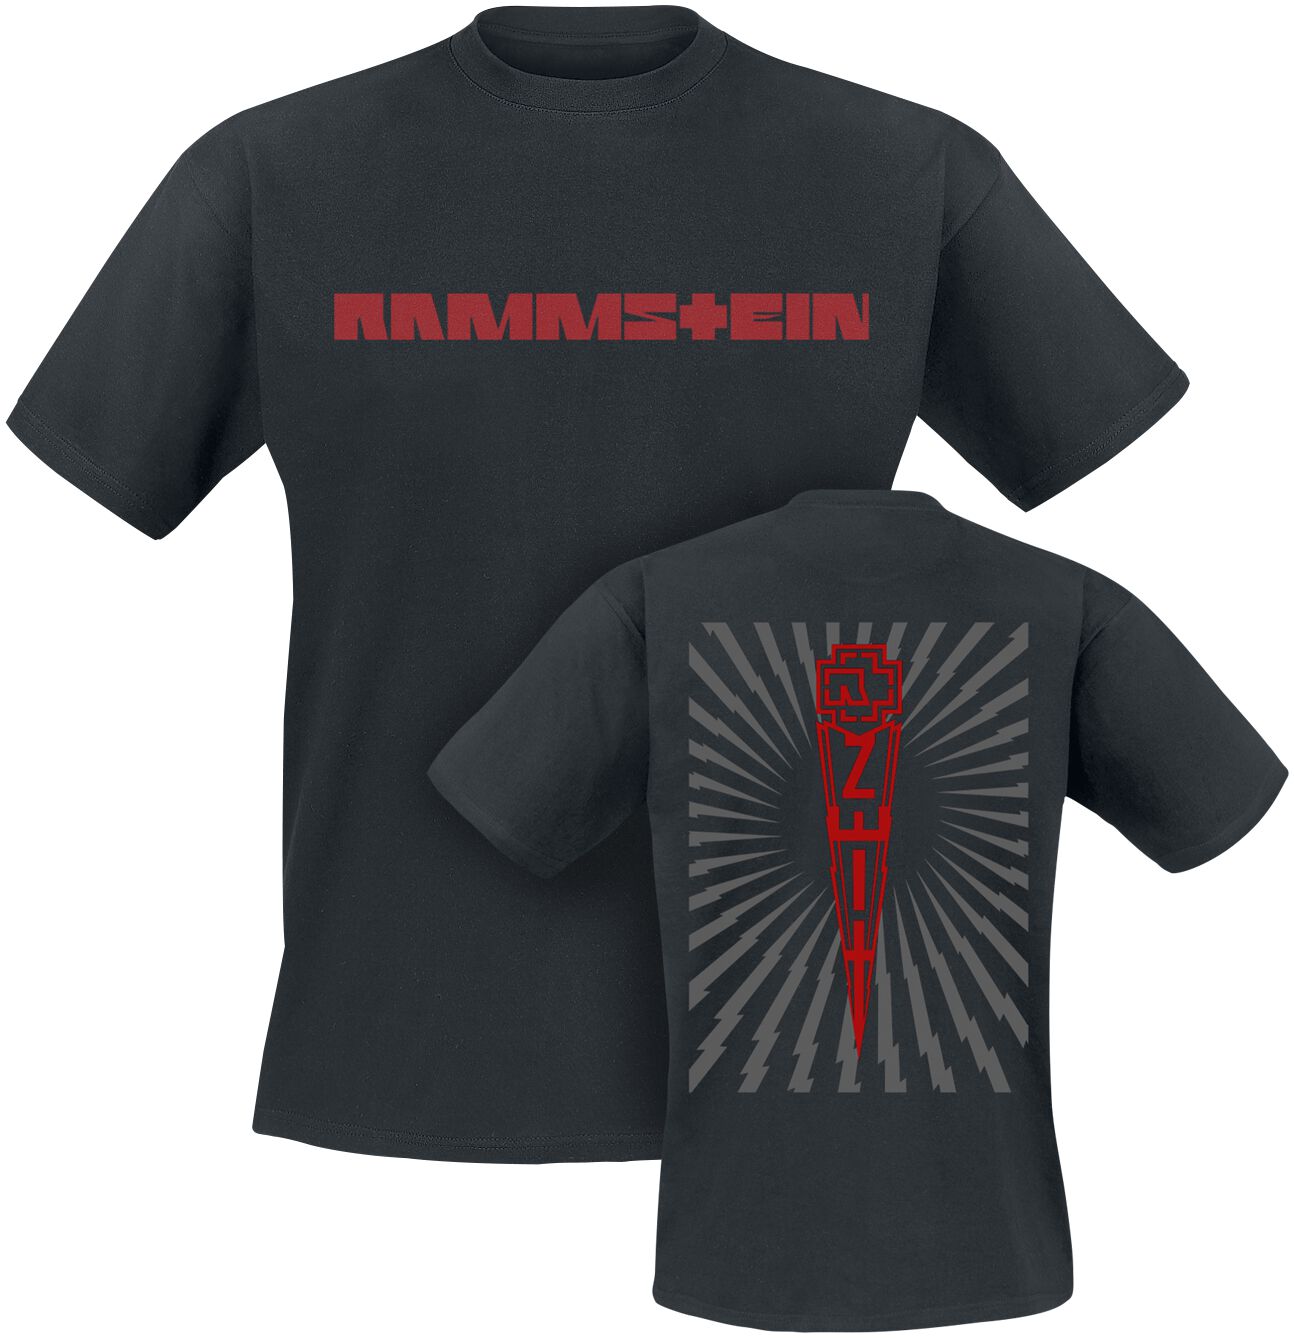 Rammstein T-Shirt - Zeit - S bis 5XL - für Männer - Größe XXL - schwarz  - Lizenziertes Merchandise!